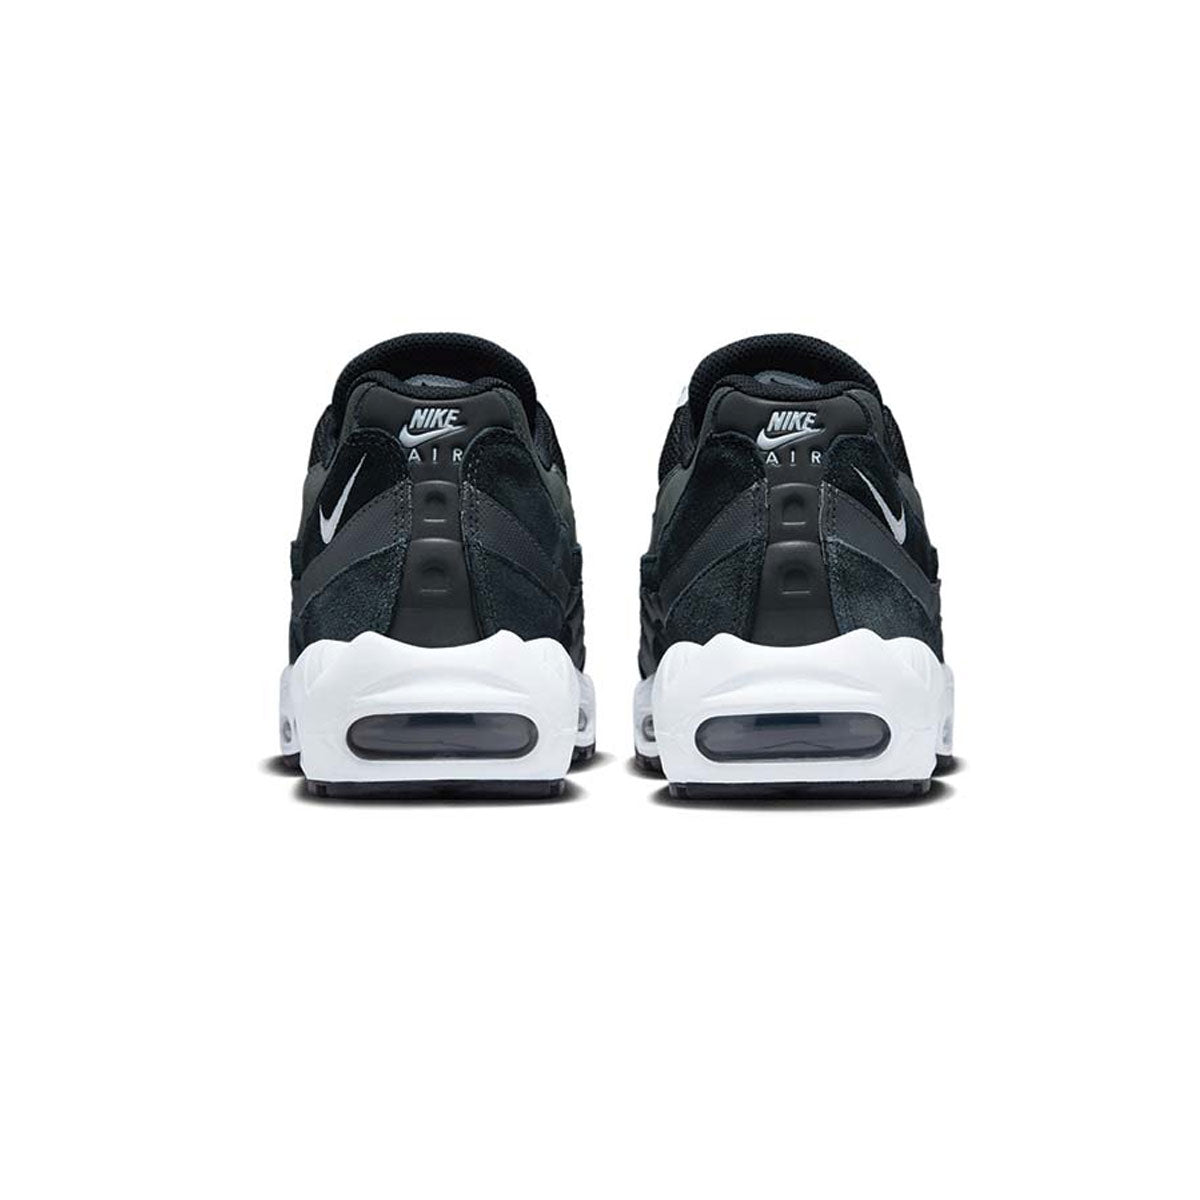 Nike Air Max 95 'Black Pure Platinum'